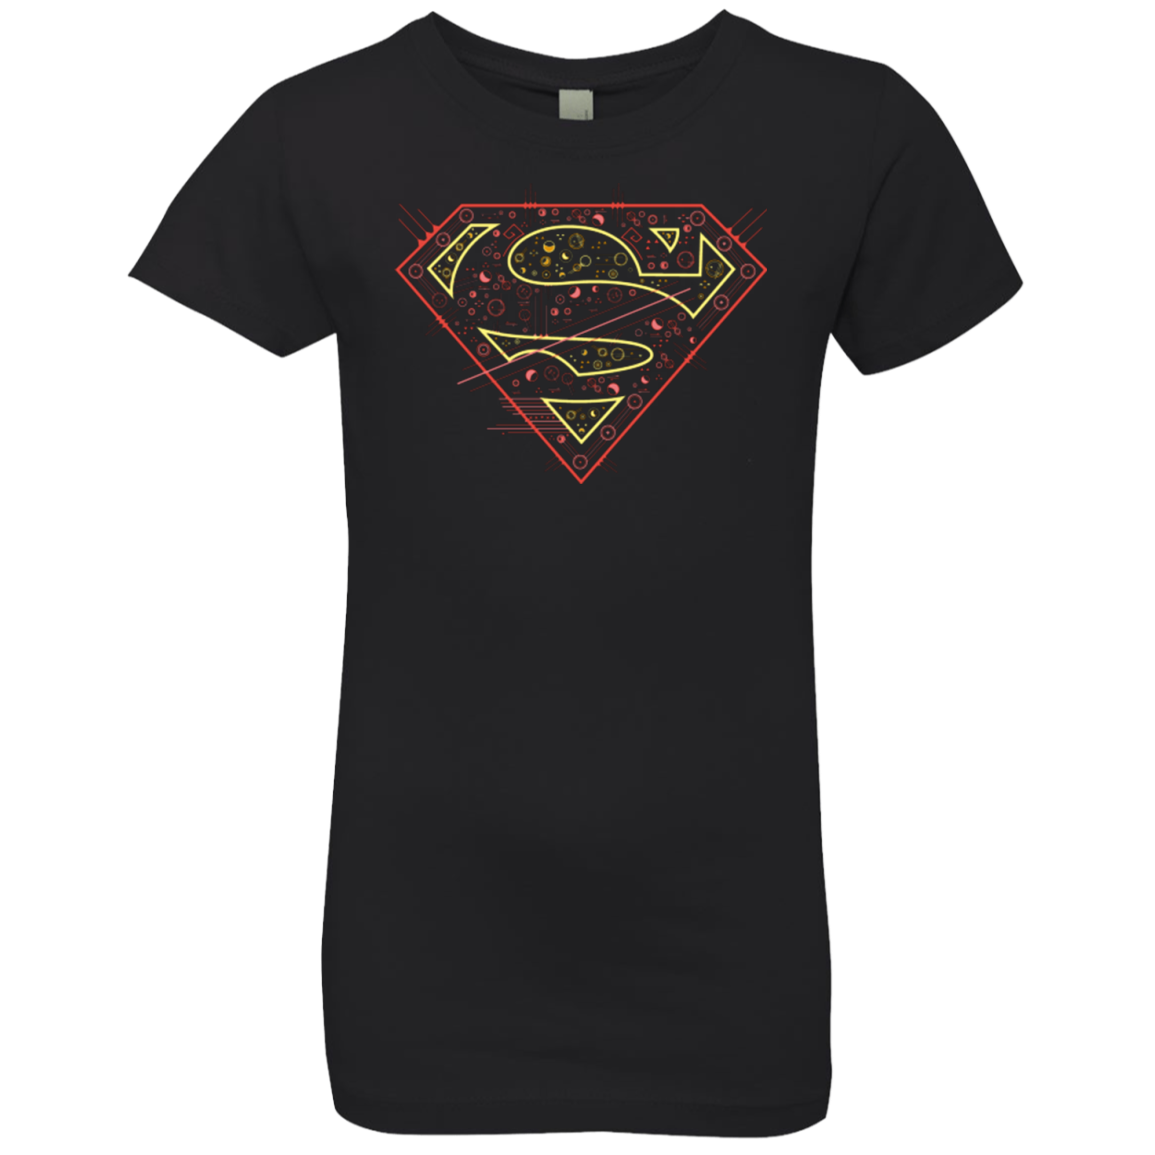 Super Tech Girls Premium T-Shirt